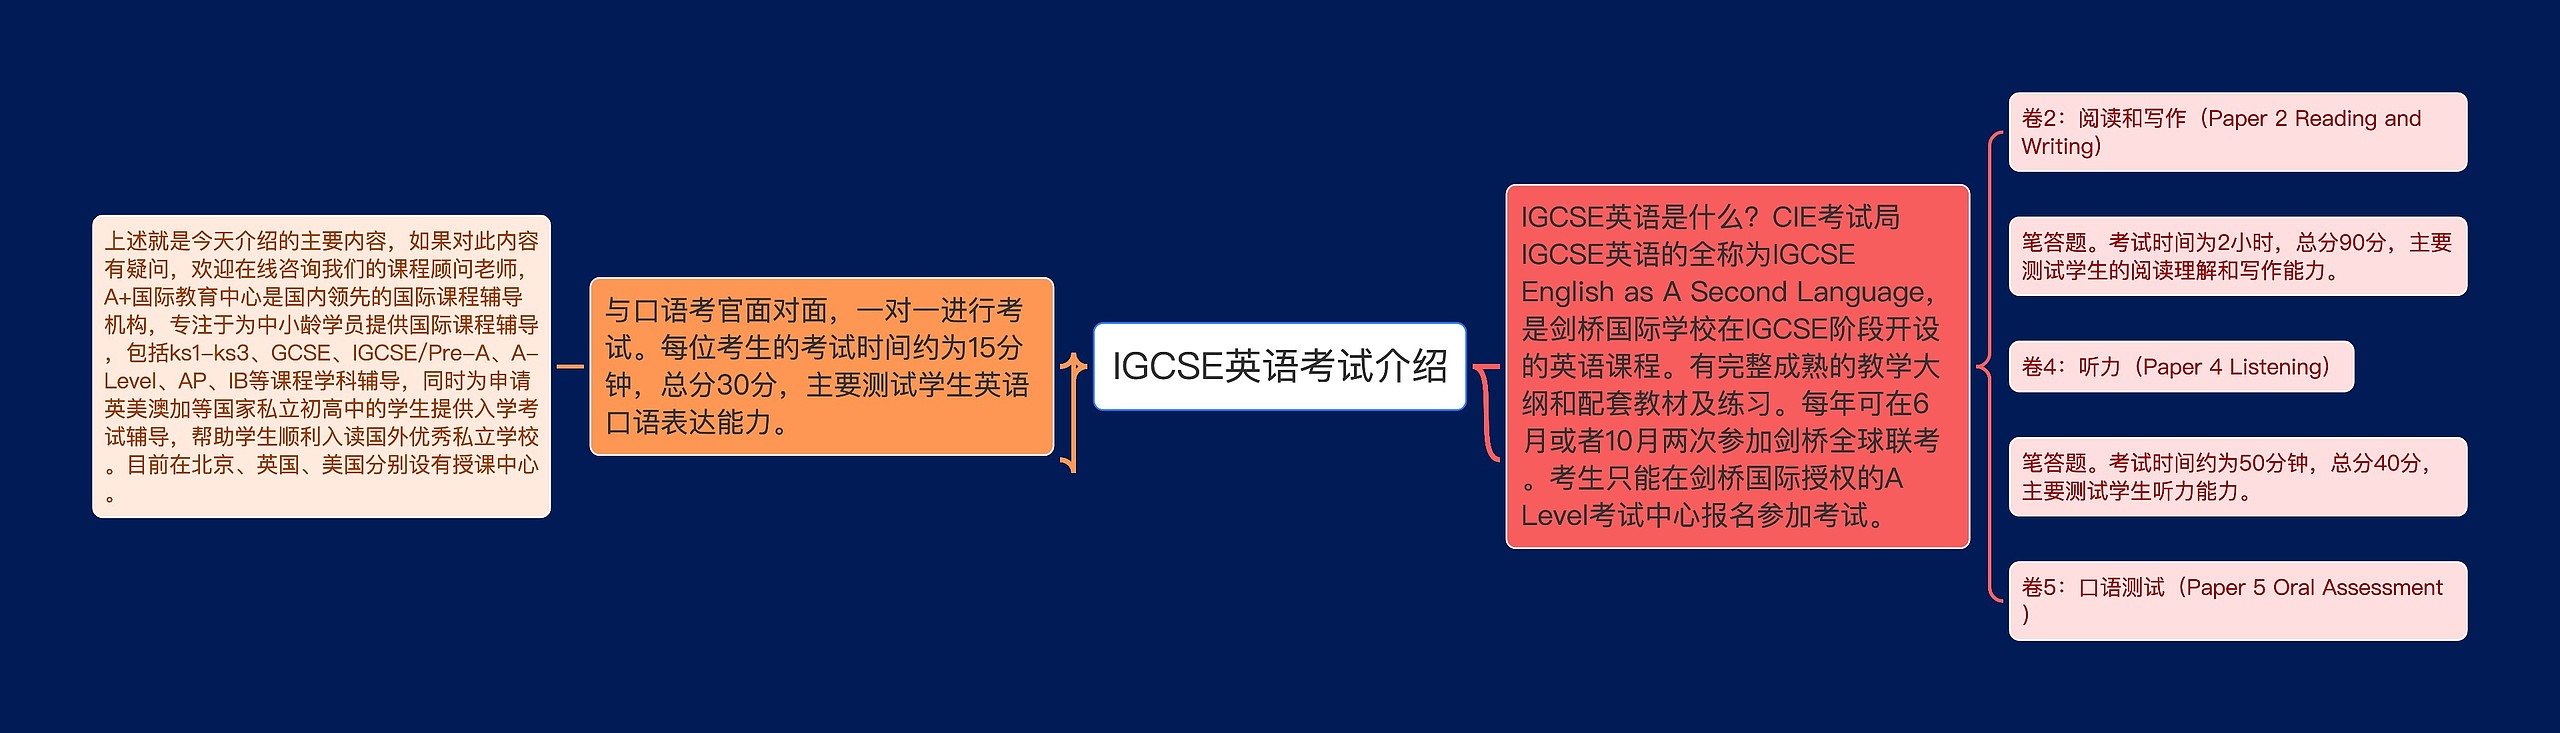 IGCSE英语考试介绍